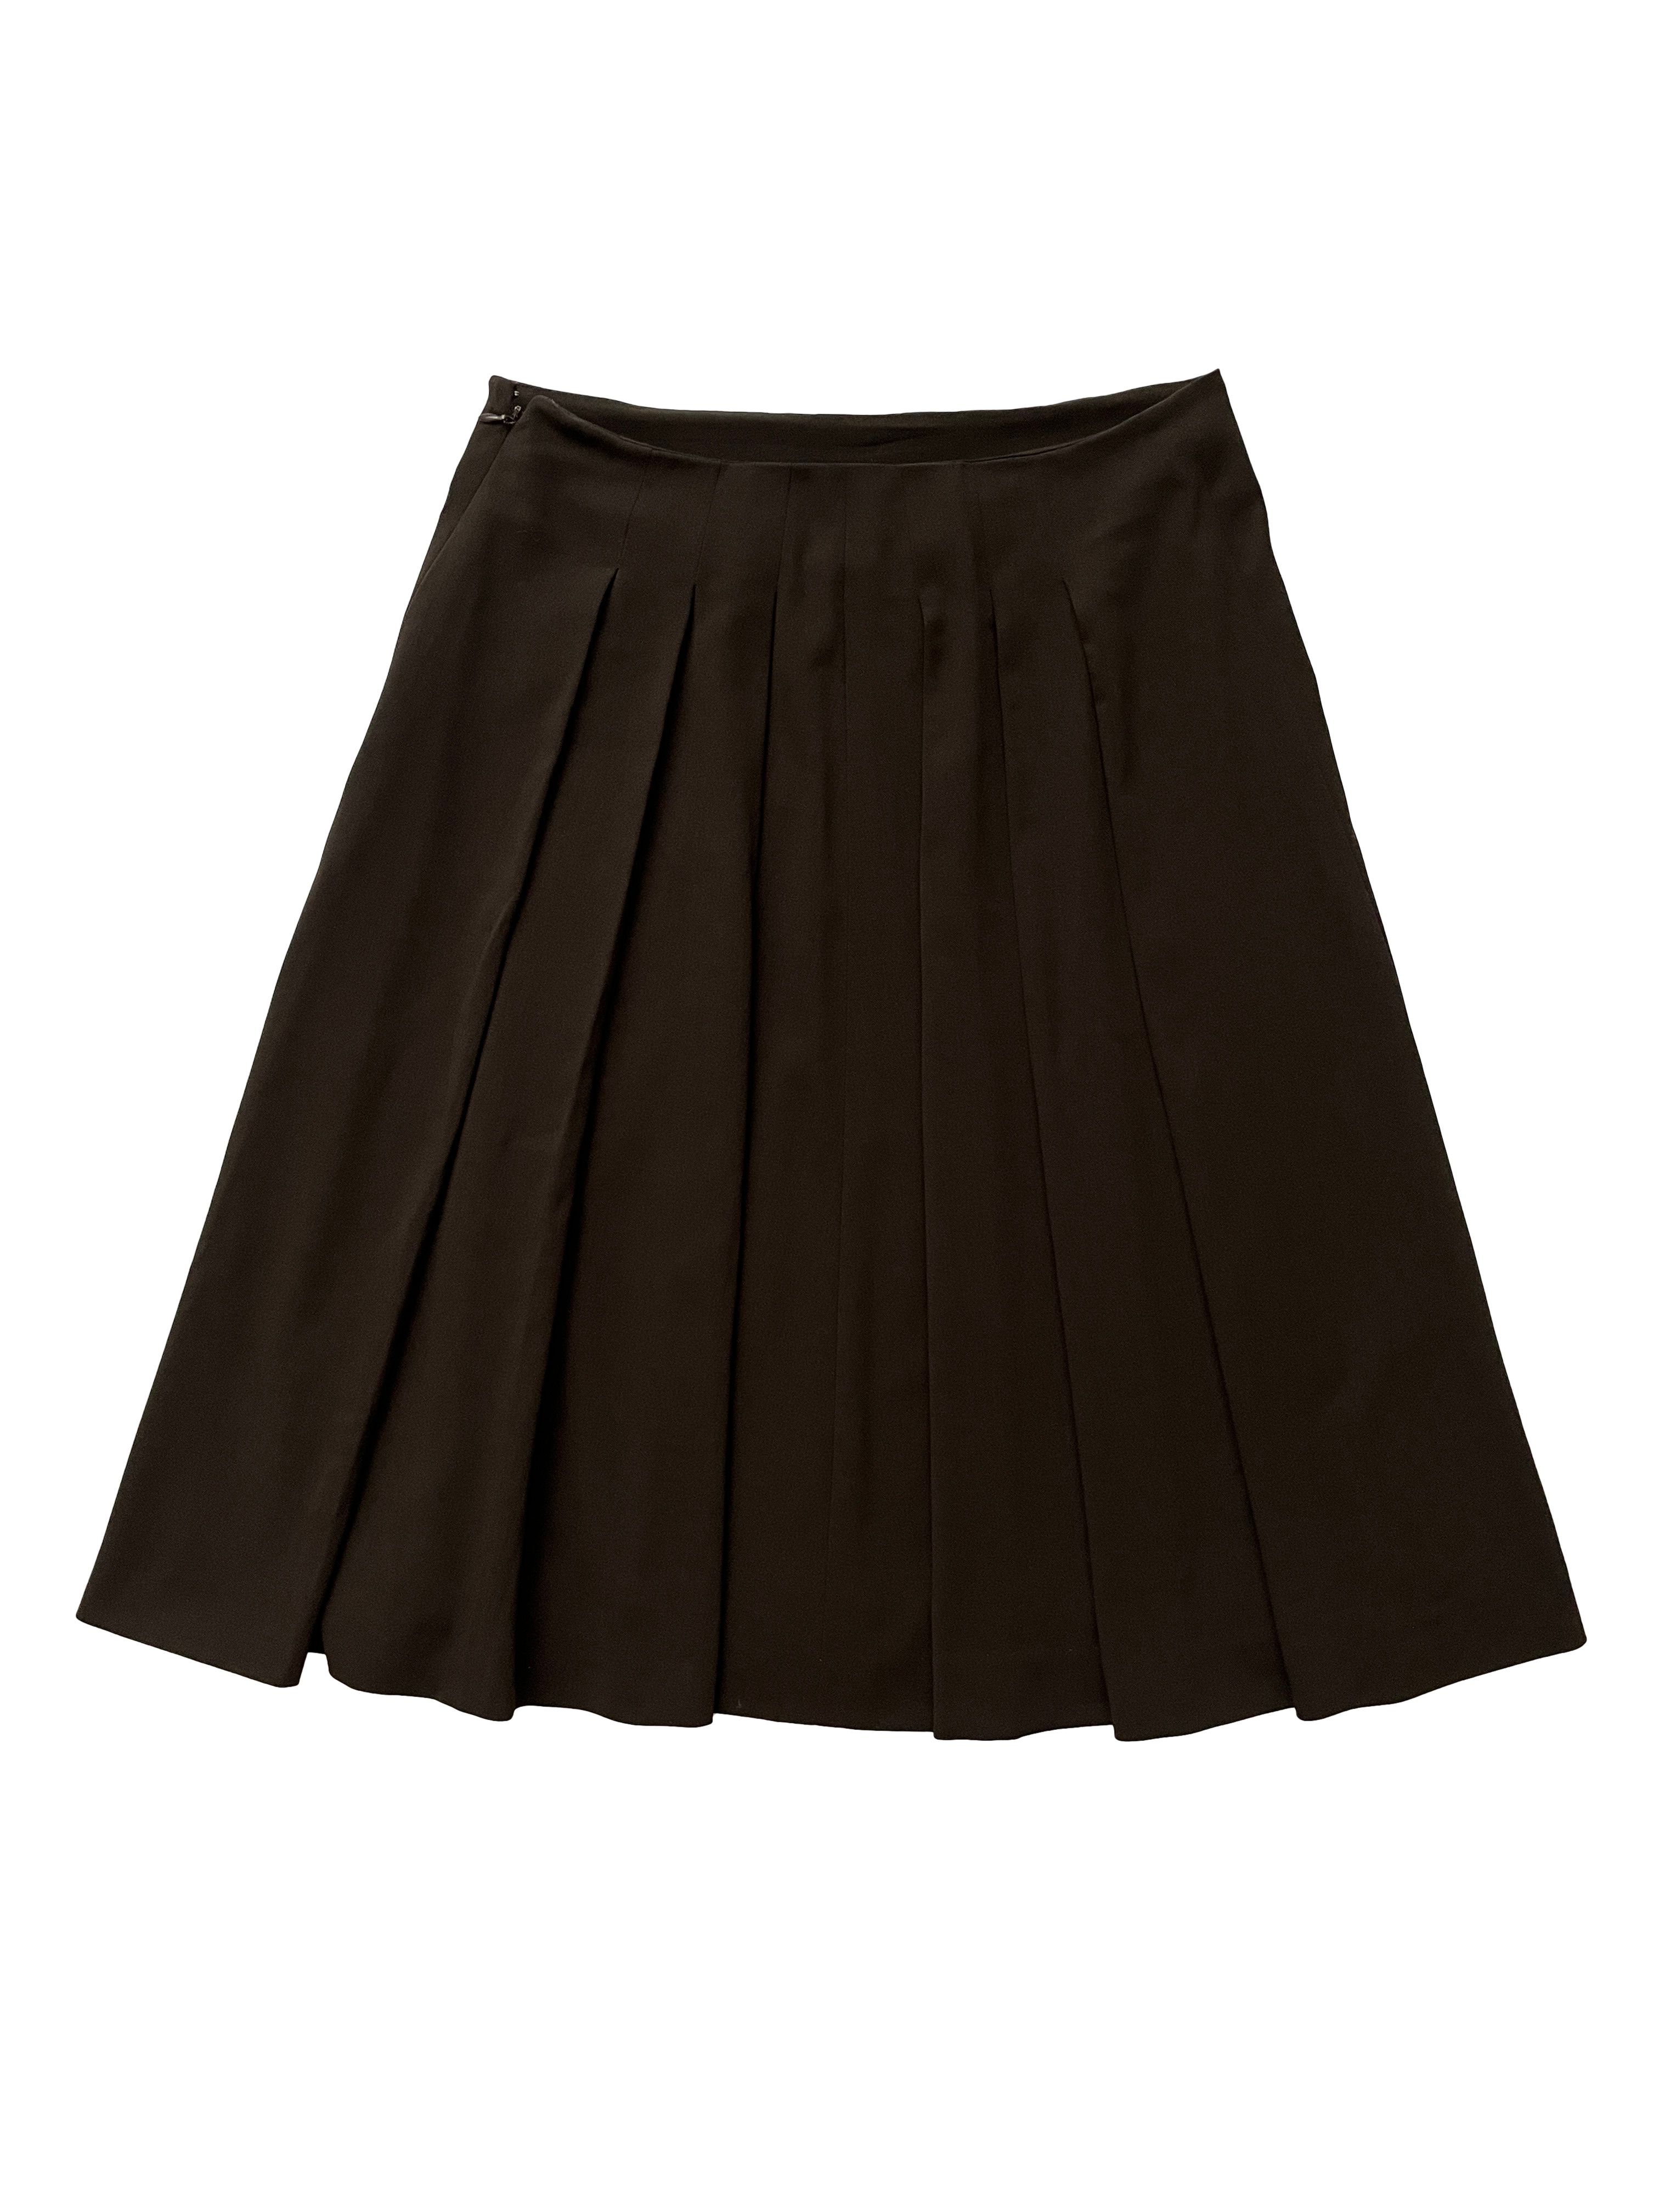 Celine ⚡️QUICK SALE⚡️Celine Phoebe Philo Brown A-Line Skirt Pleats Size 28" / US 6 / IT 42 - 2 Preview